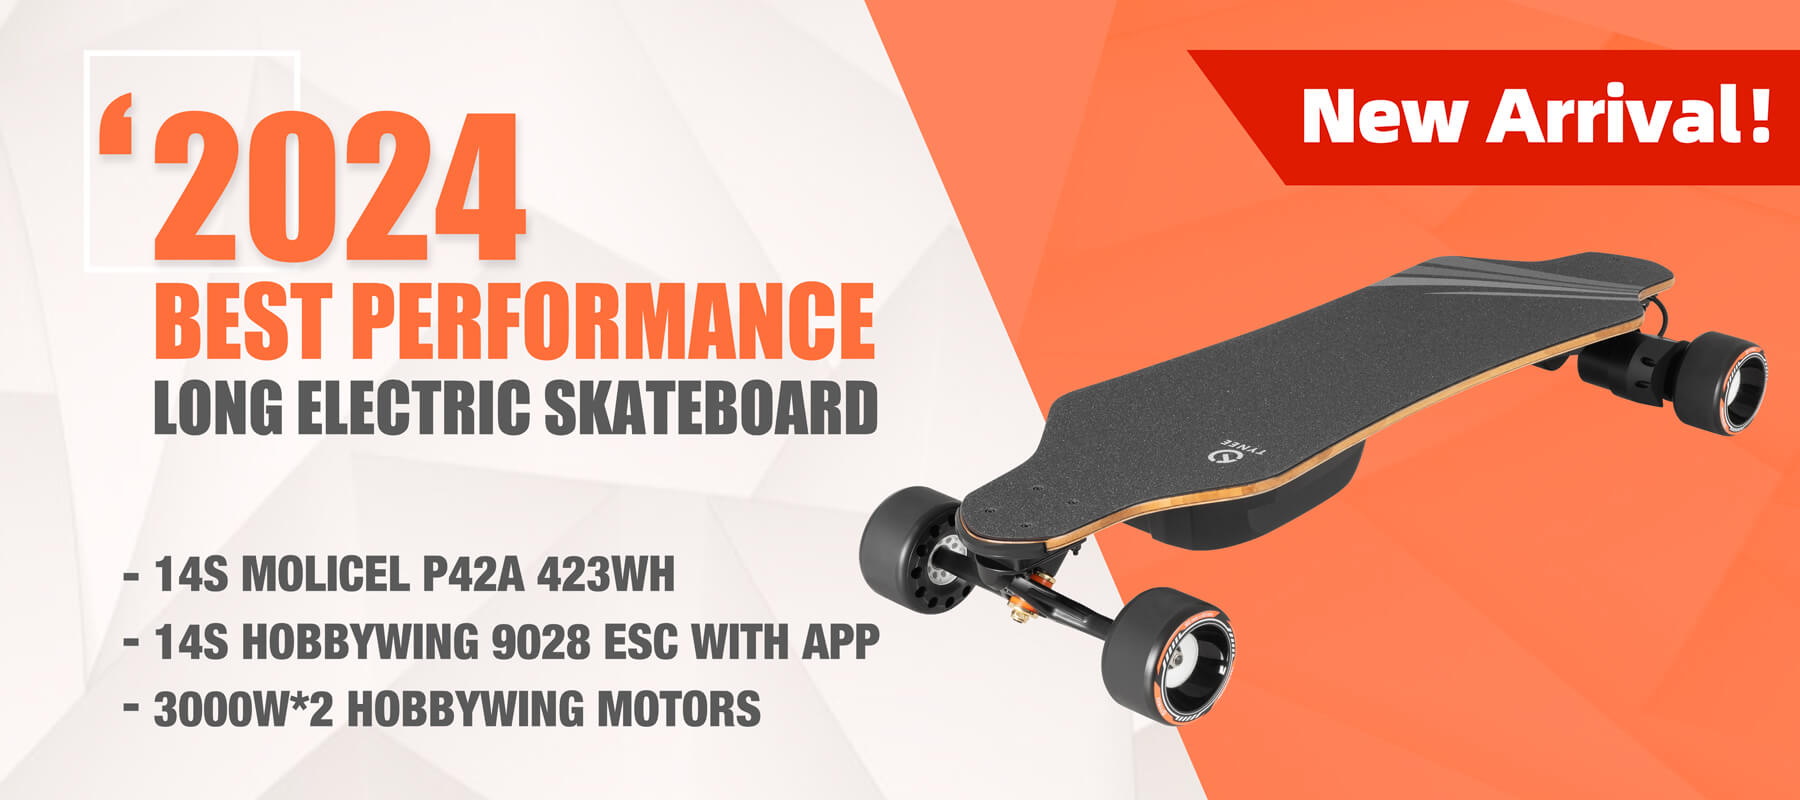 Tynee Board Ultra X Pro Electric Skateboard 